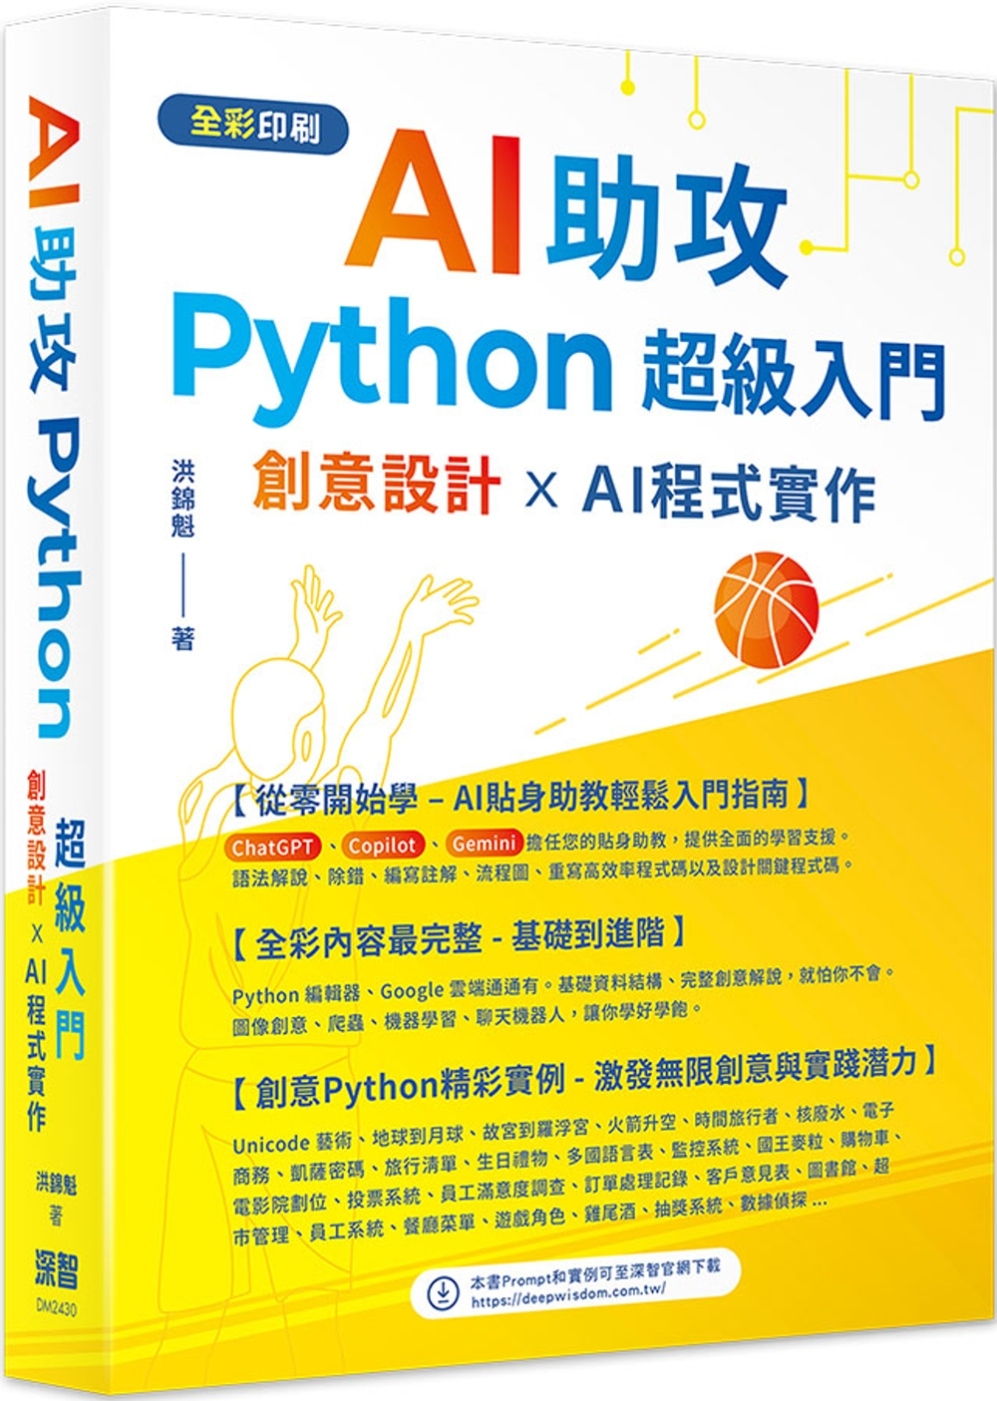 AI助攻 Python超級入門 創意設計 x AI程式實作